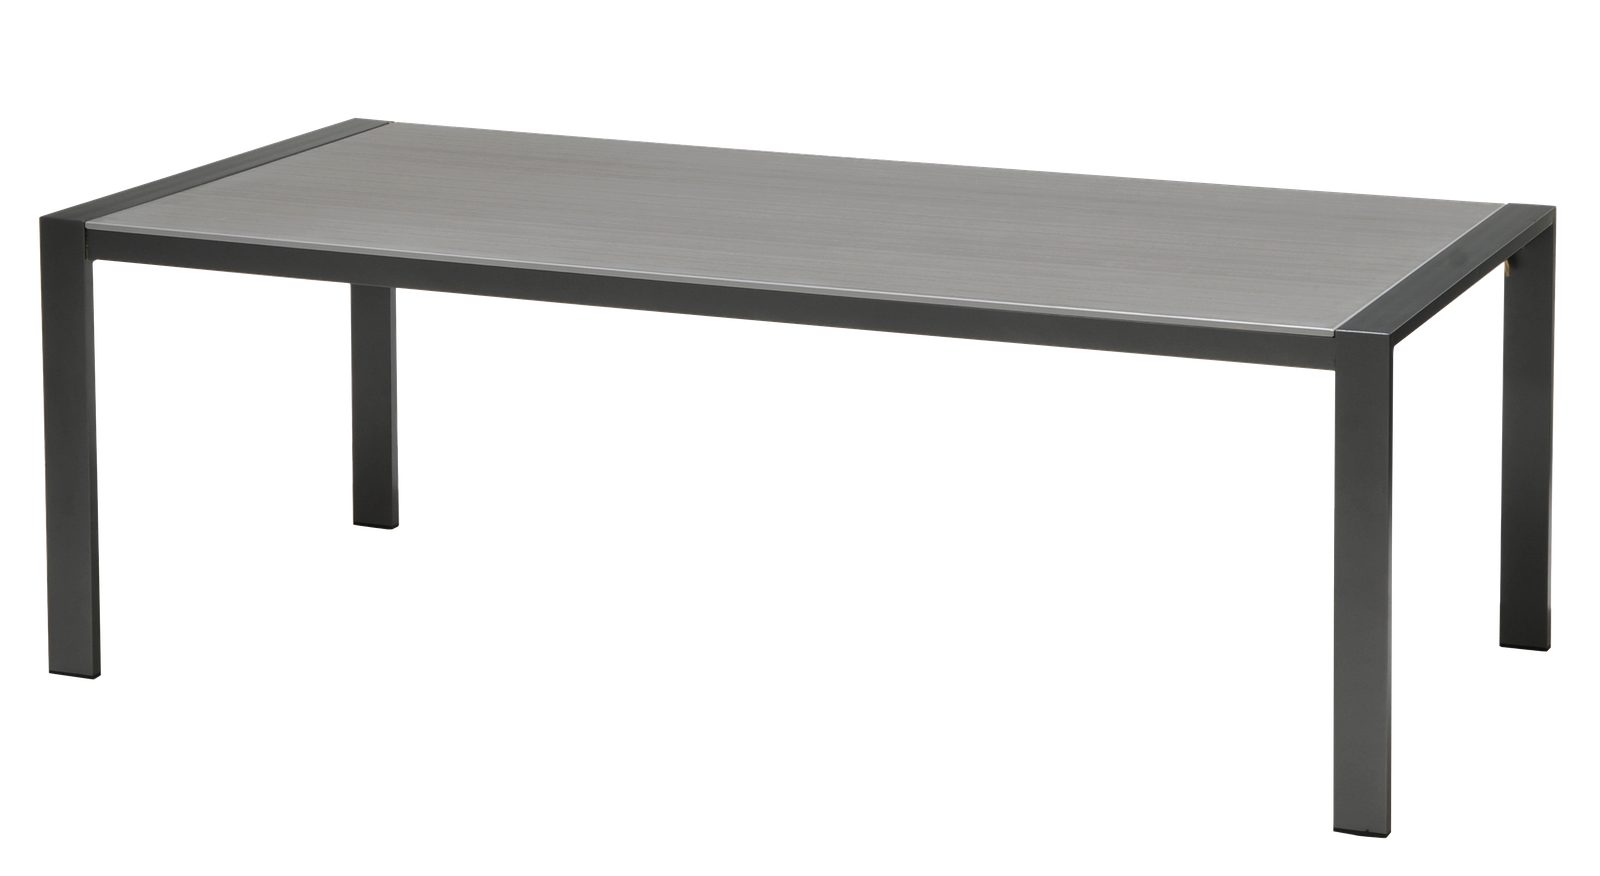 Lesli Living Gartentisch Gartentisch Tisch Esstisch DURANITE 218x100x75 cm anthrazit Aluminium | Tische